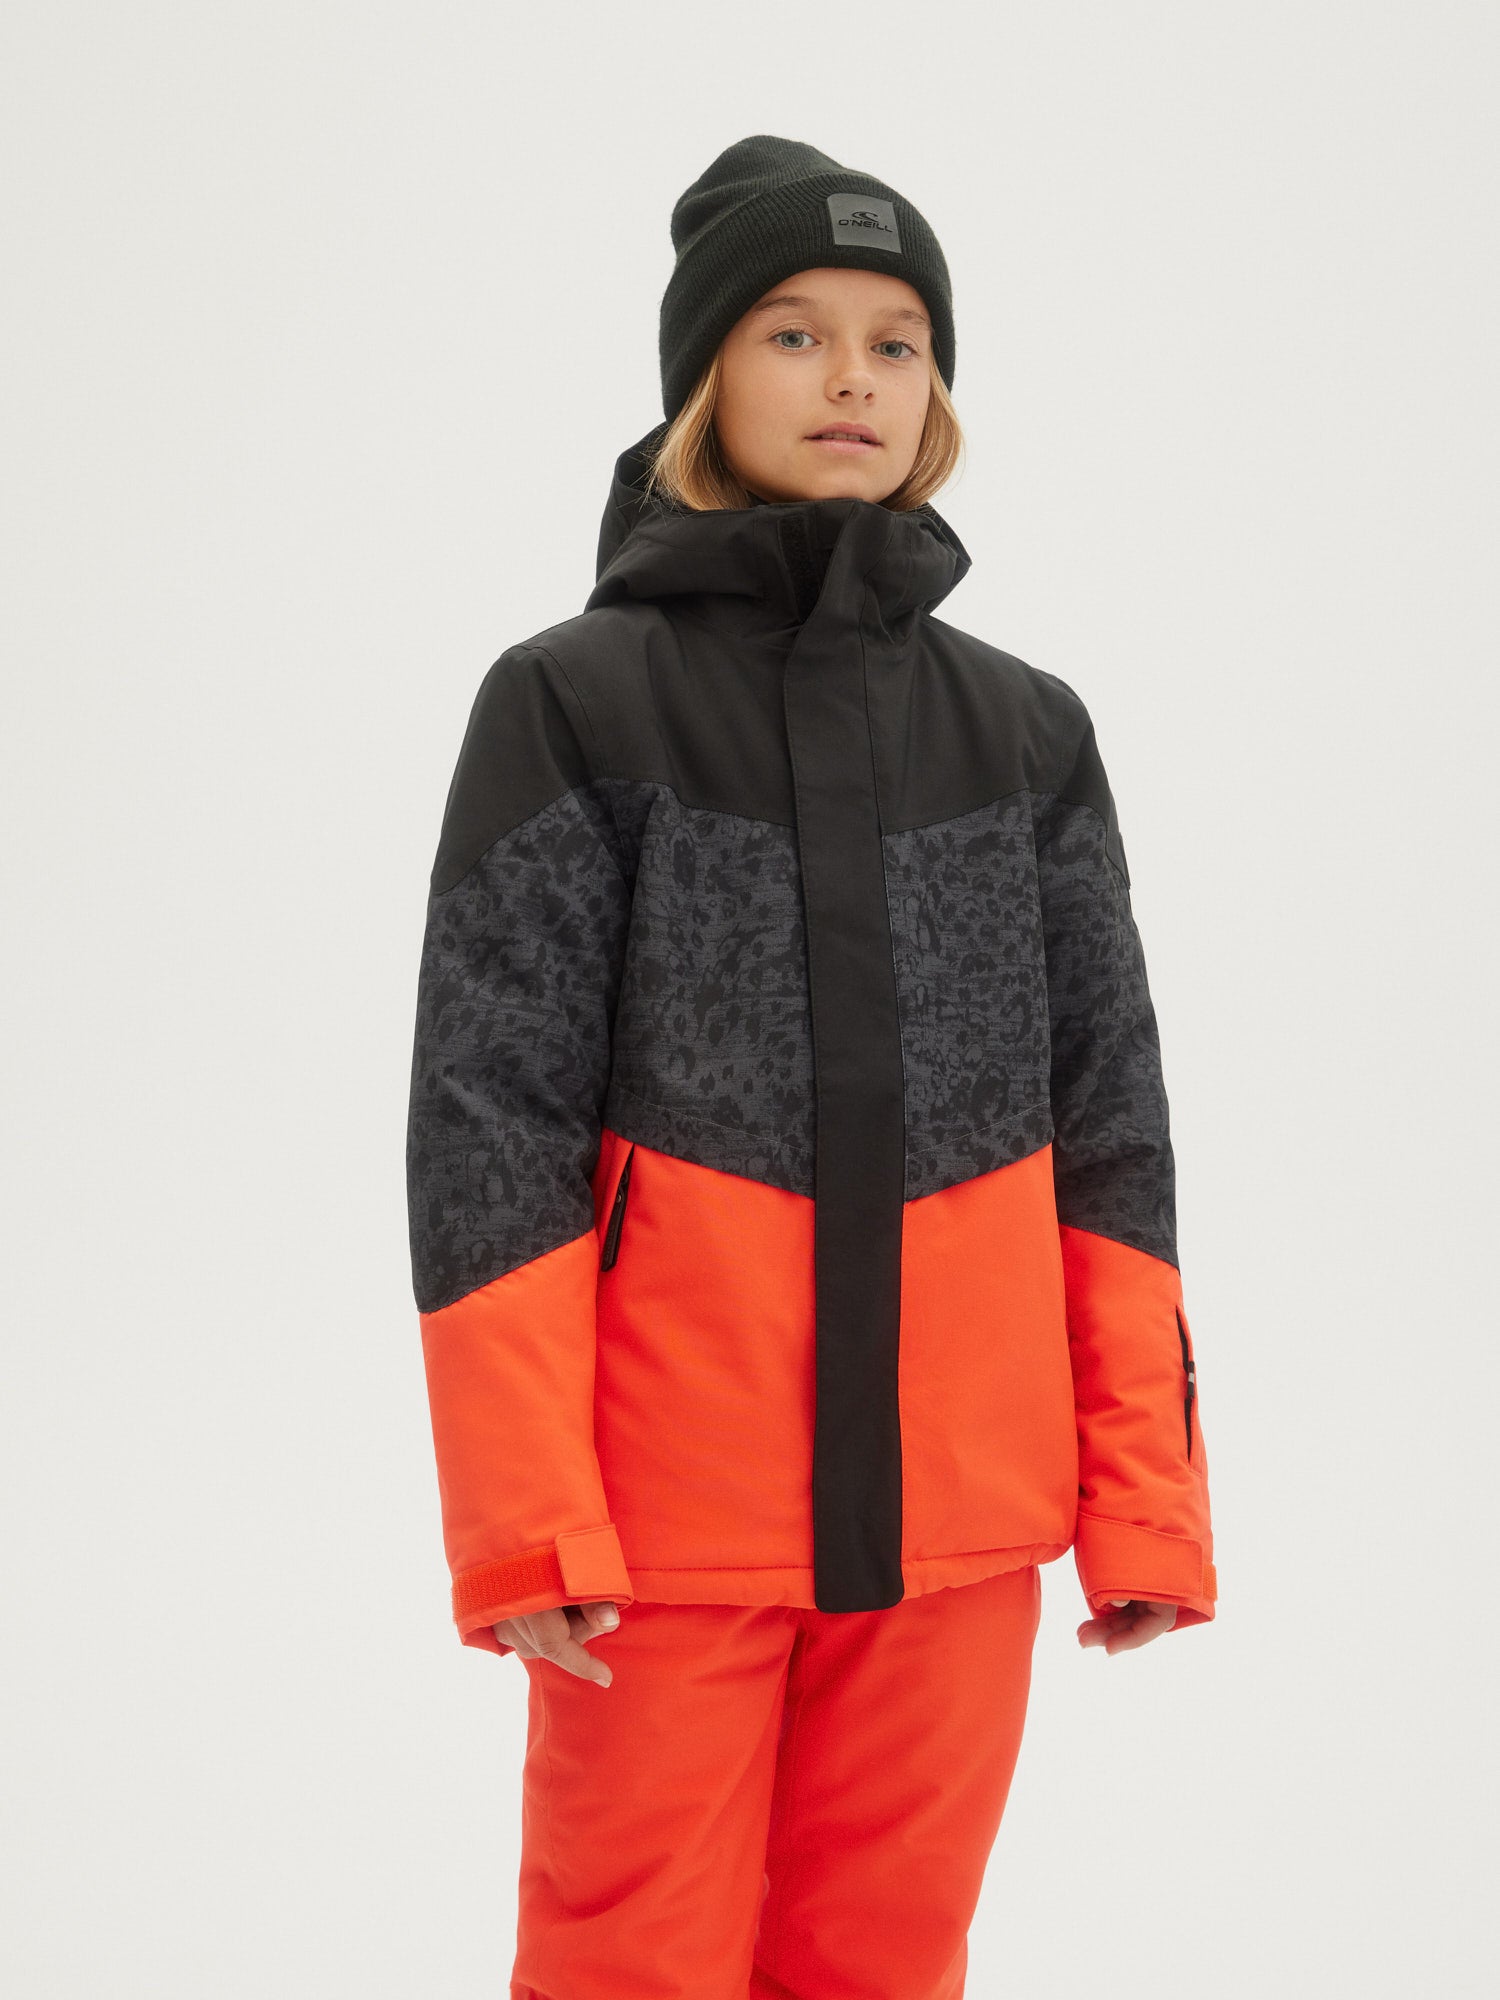 Girls Sweaters, Hoodies, Fleece & Jackets – O'NEILL